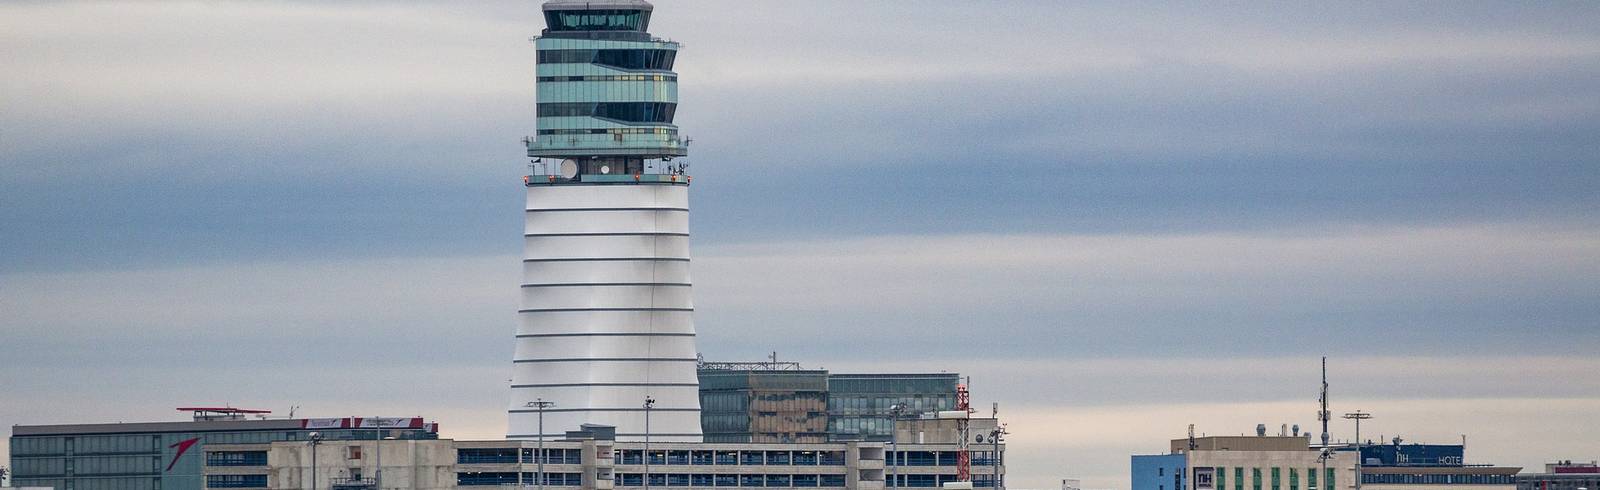 Flughafen Wien steuert auf Passagierrekord zu